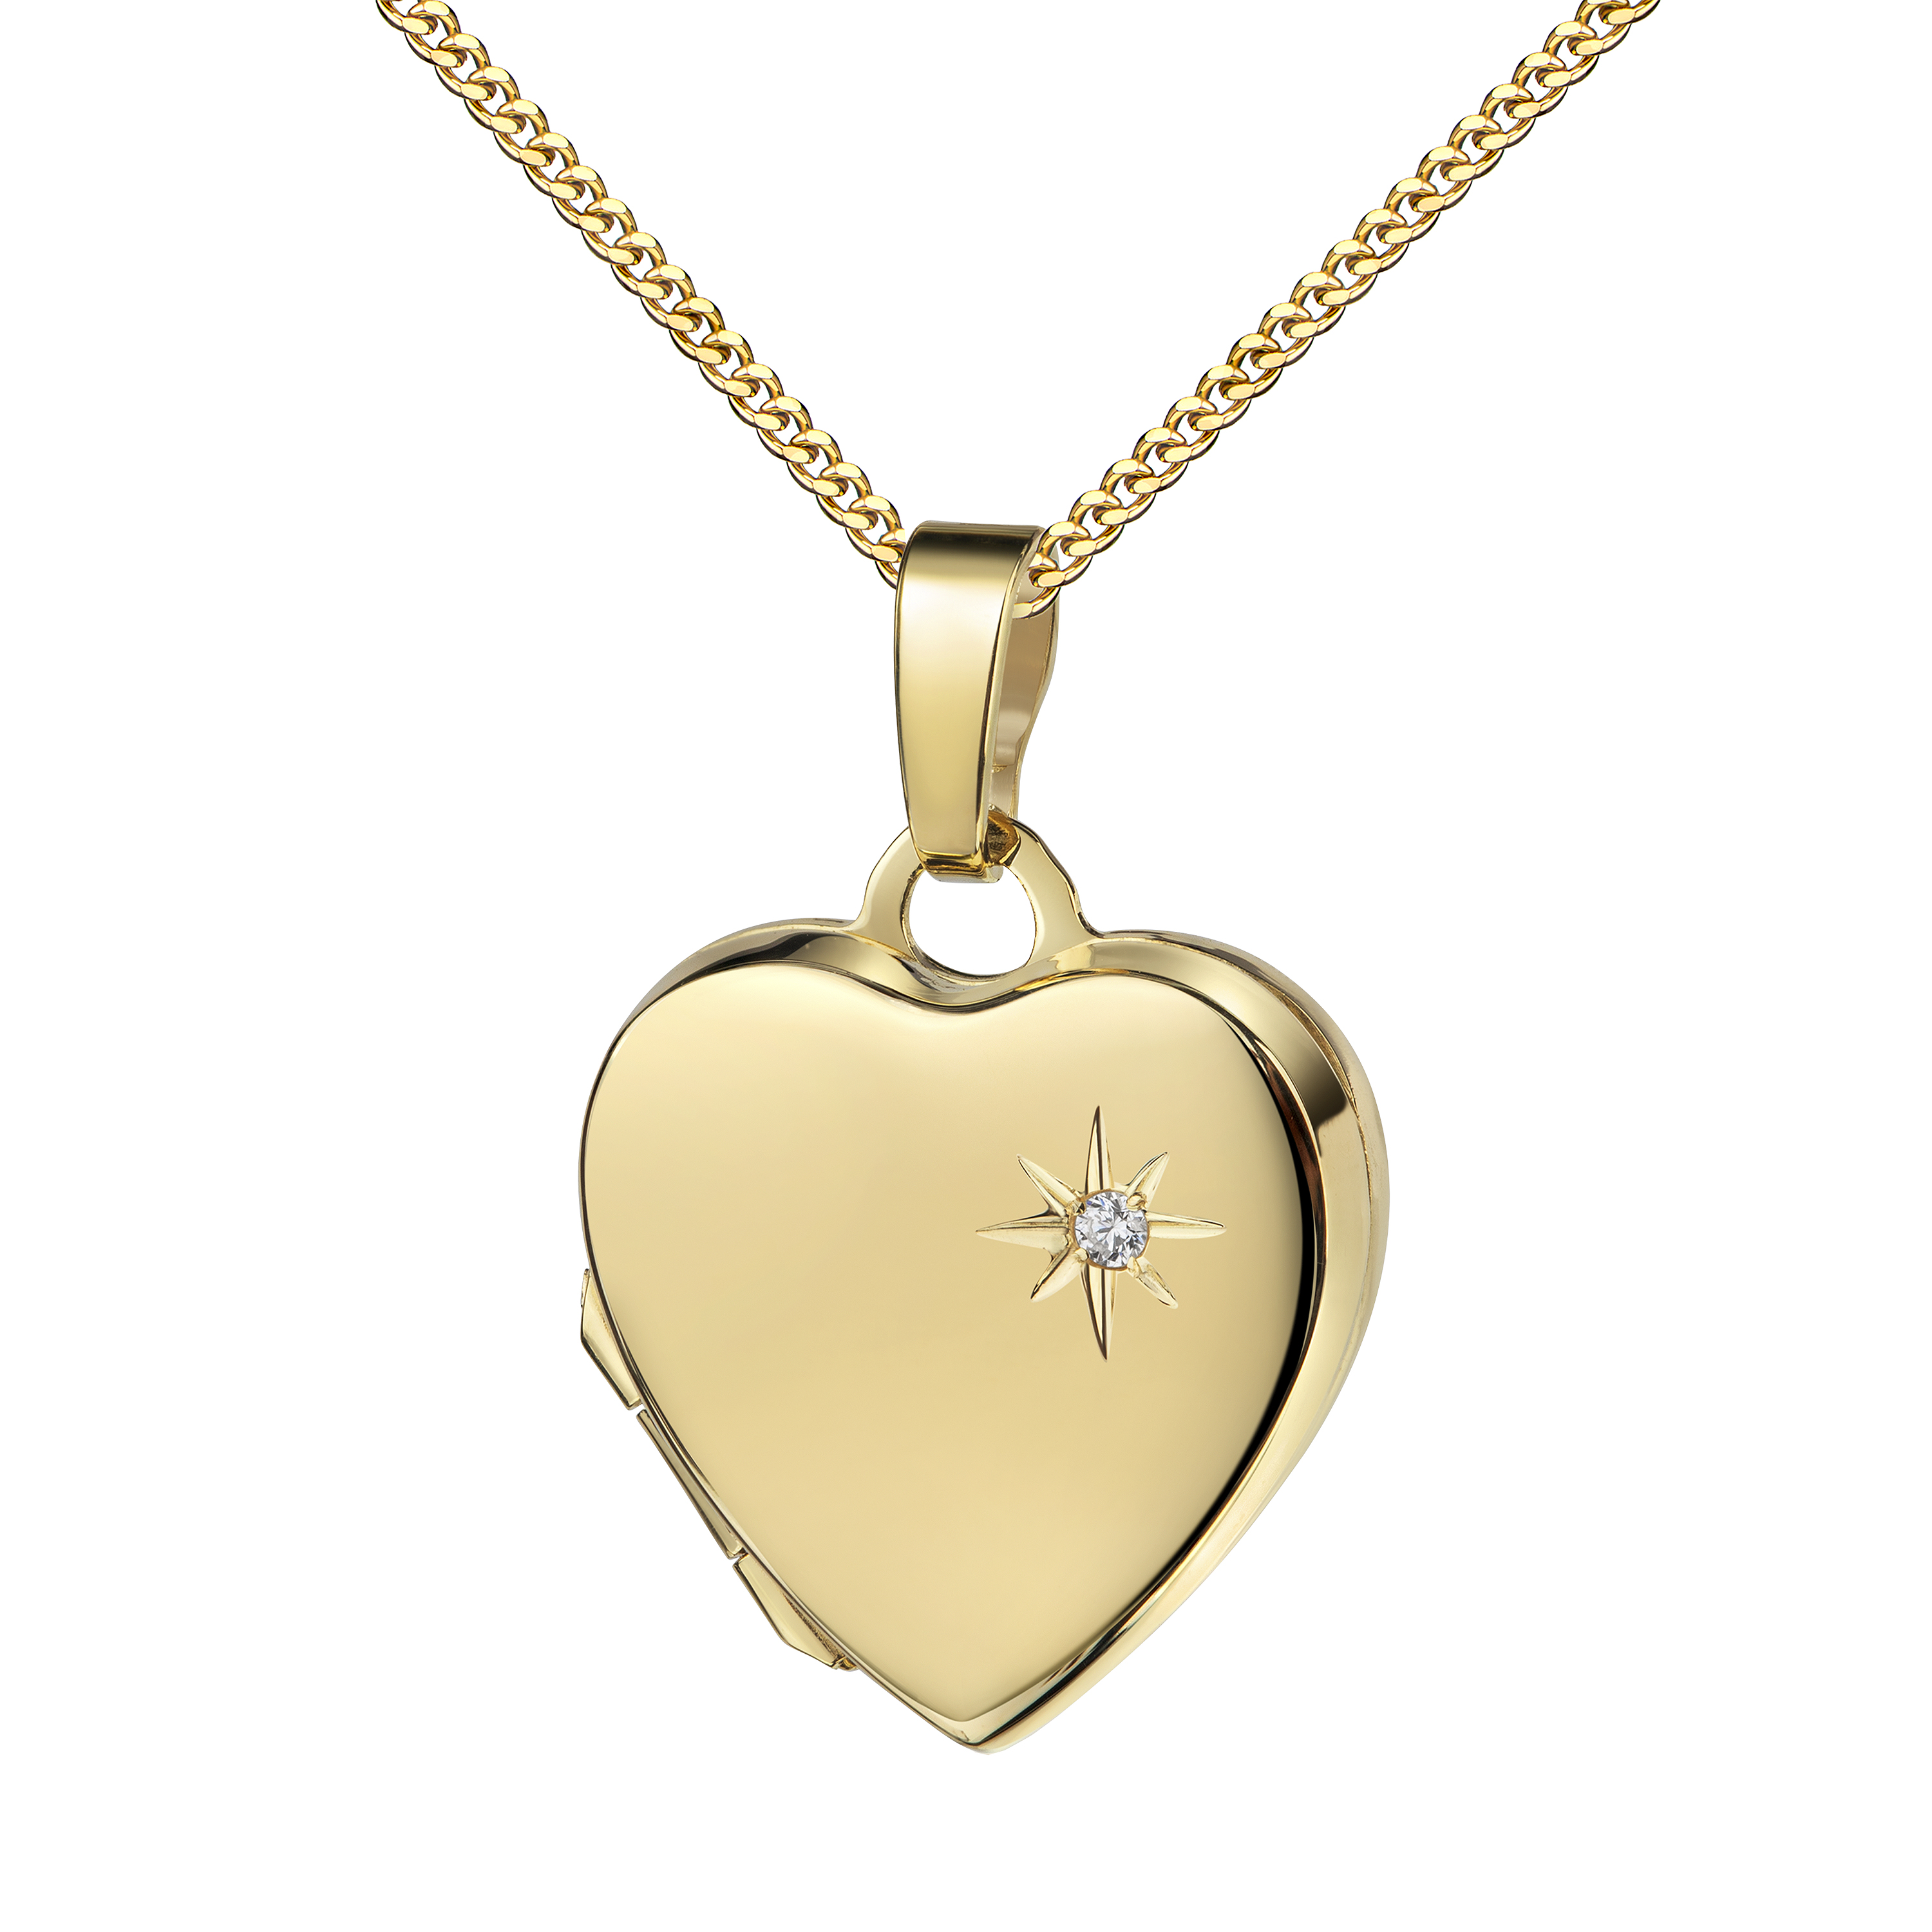 Medaillon Herz 333 Gold 8 Karat mit Brillant, Herz-Amulett für 2 Bilder Herzkette und Schmuck-Etui